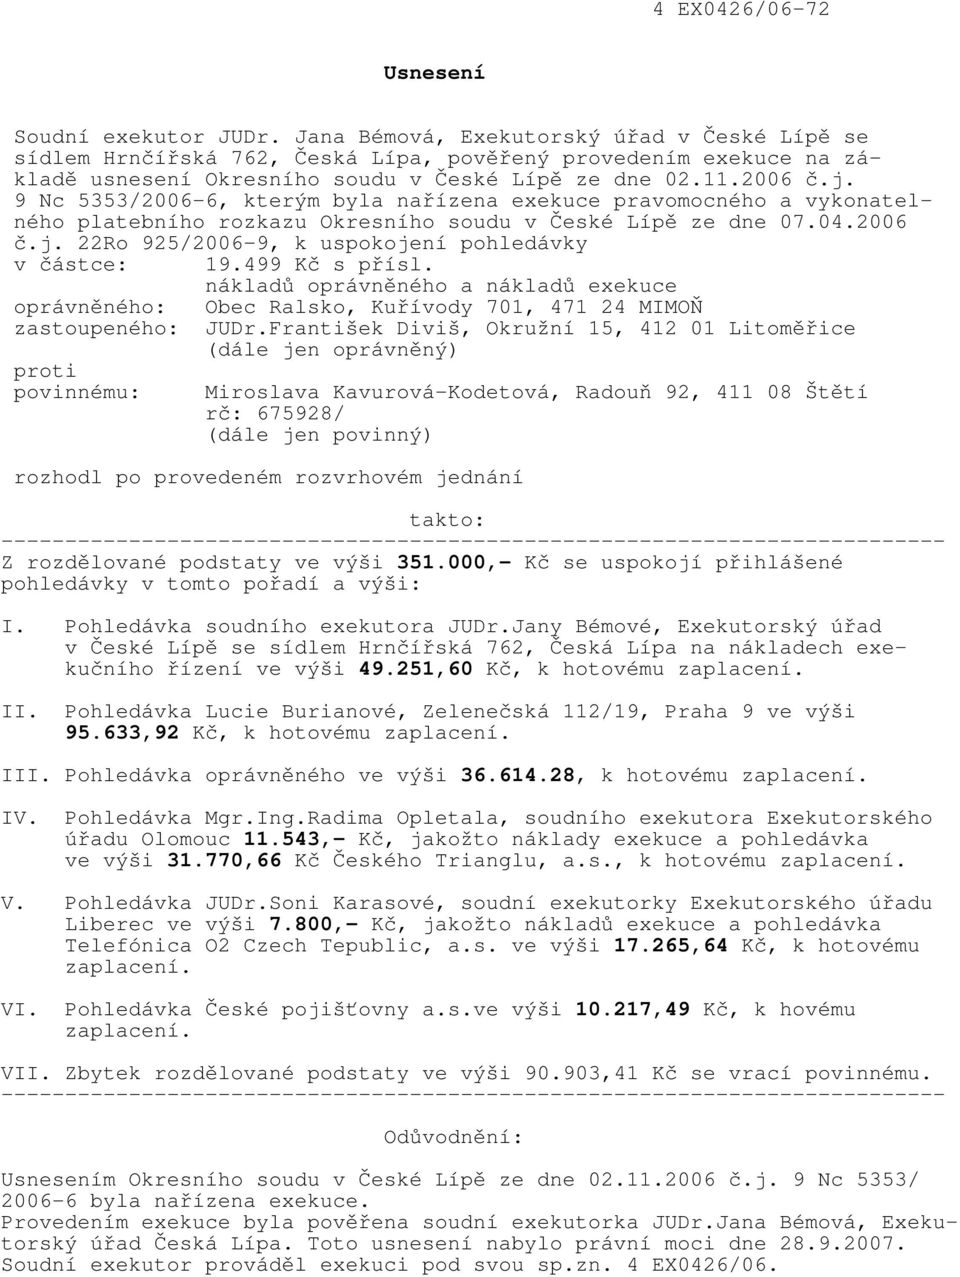 9 Nc 5353/2006-6, kterým byla nařízena exekuce pravomocného a vykonatelného platebního rozkazu Okresního soudu v České Lípě ze dne 07.04.2006 č.j.